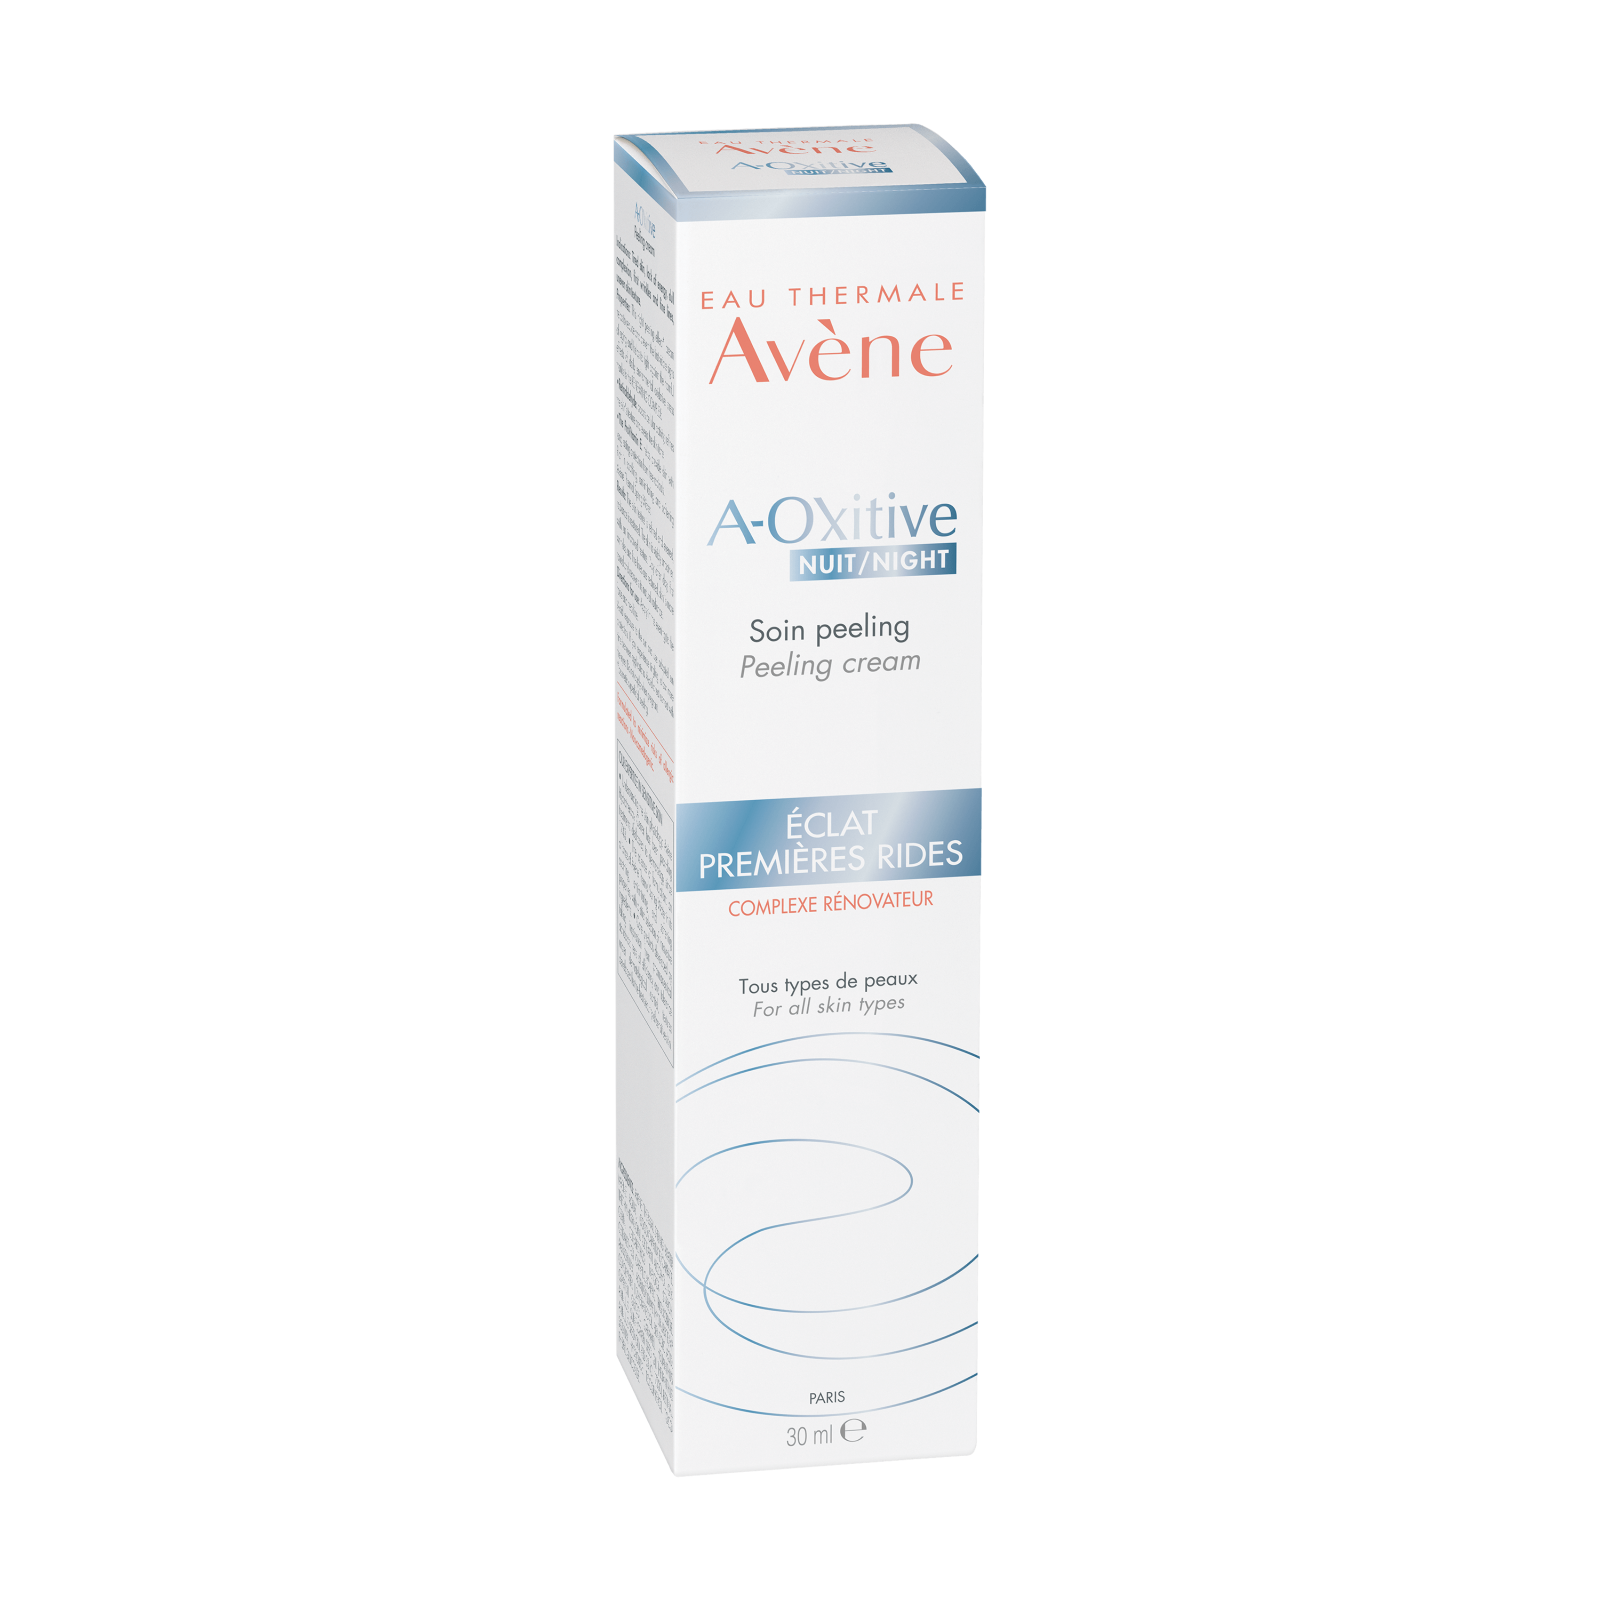 Creme si geluri de fata - Avene A-oxitive Crema de noapte exfolianta, 30ml 